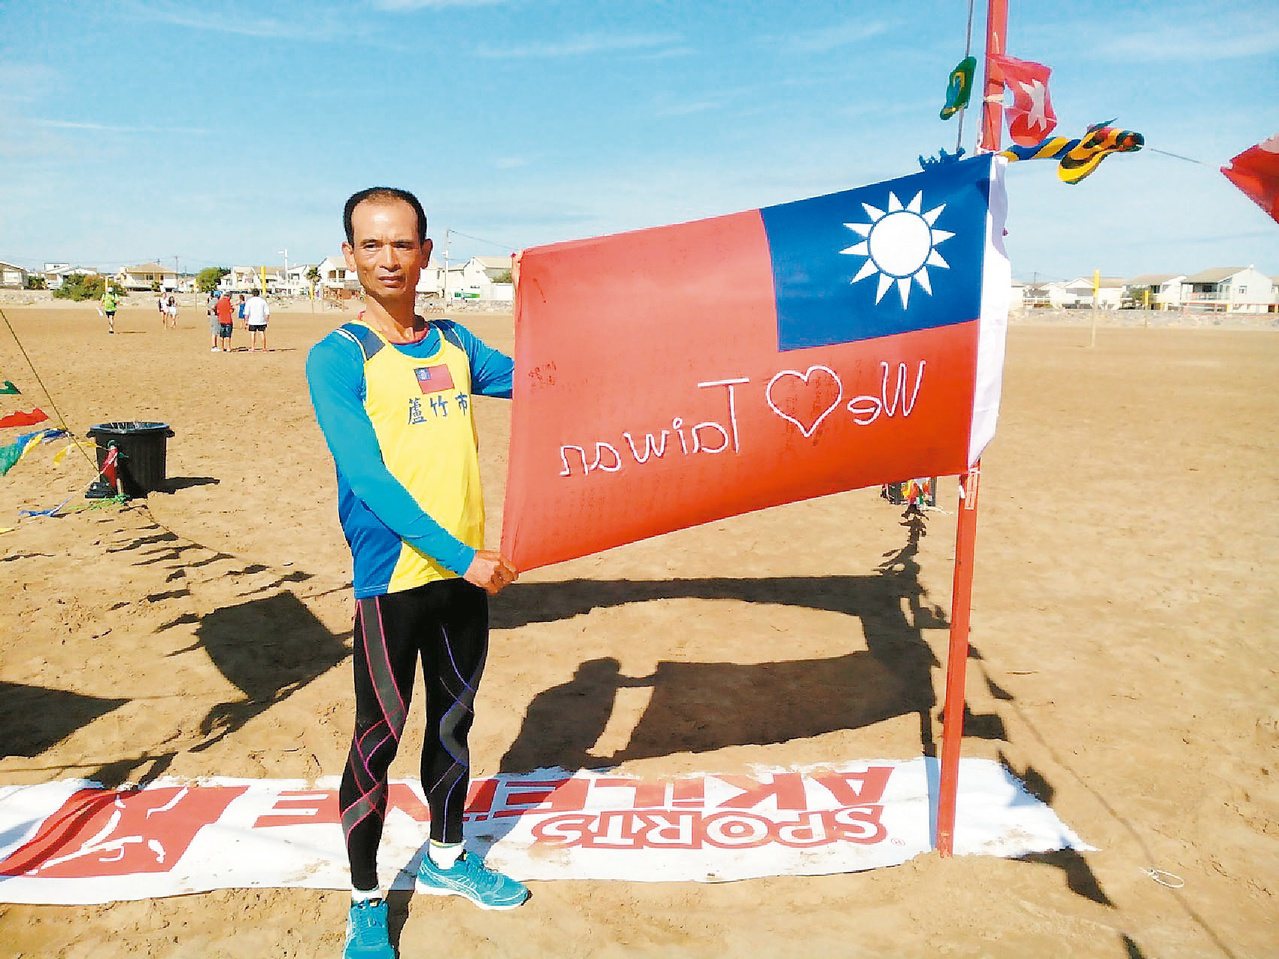 馬拉松跑者蔡萬春，為了治療失眠開始跑步。日前他挑戰法國穿越高盧超級馬拉松，獲得亞軍的好成績。